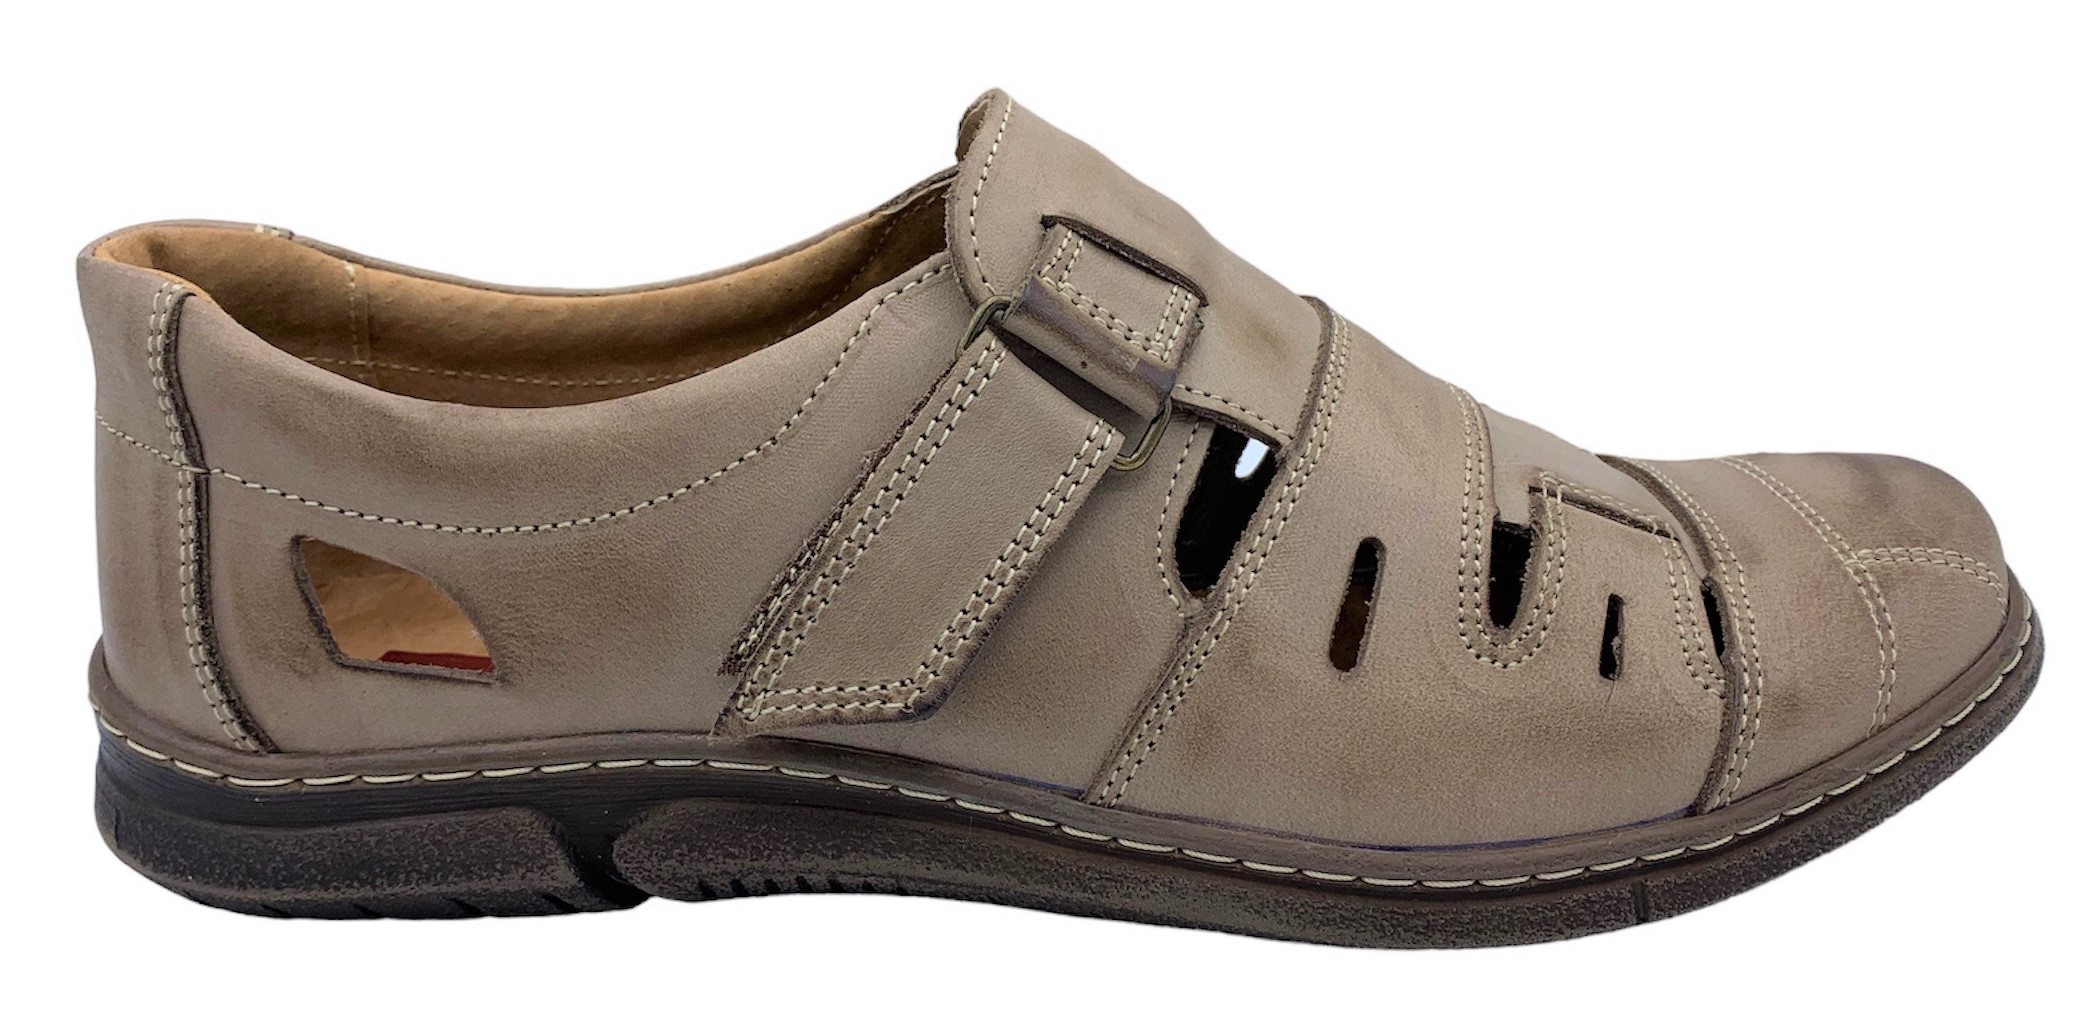 Pánská kožené sandále NES 4617 hnědé Velikost: 41 (EU)